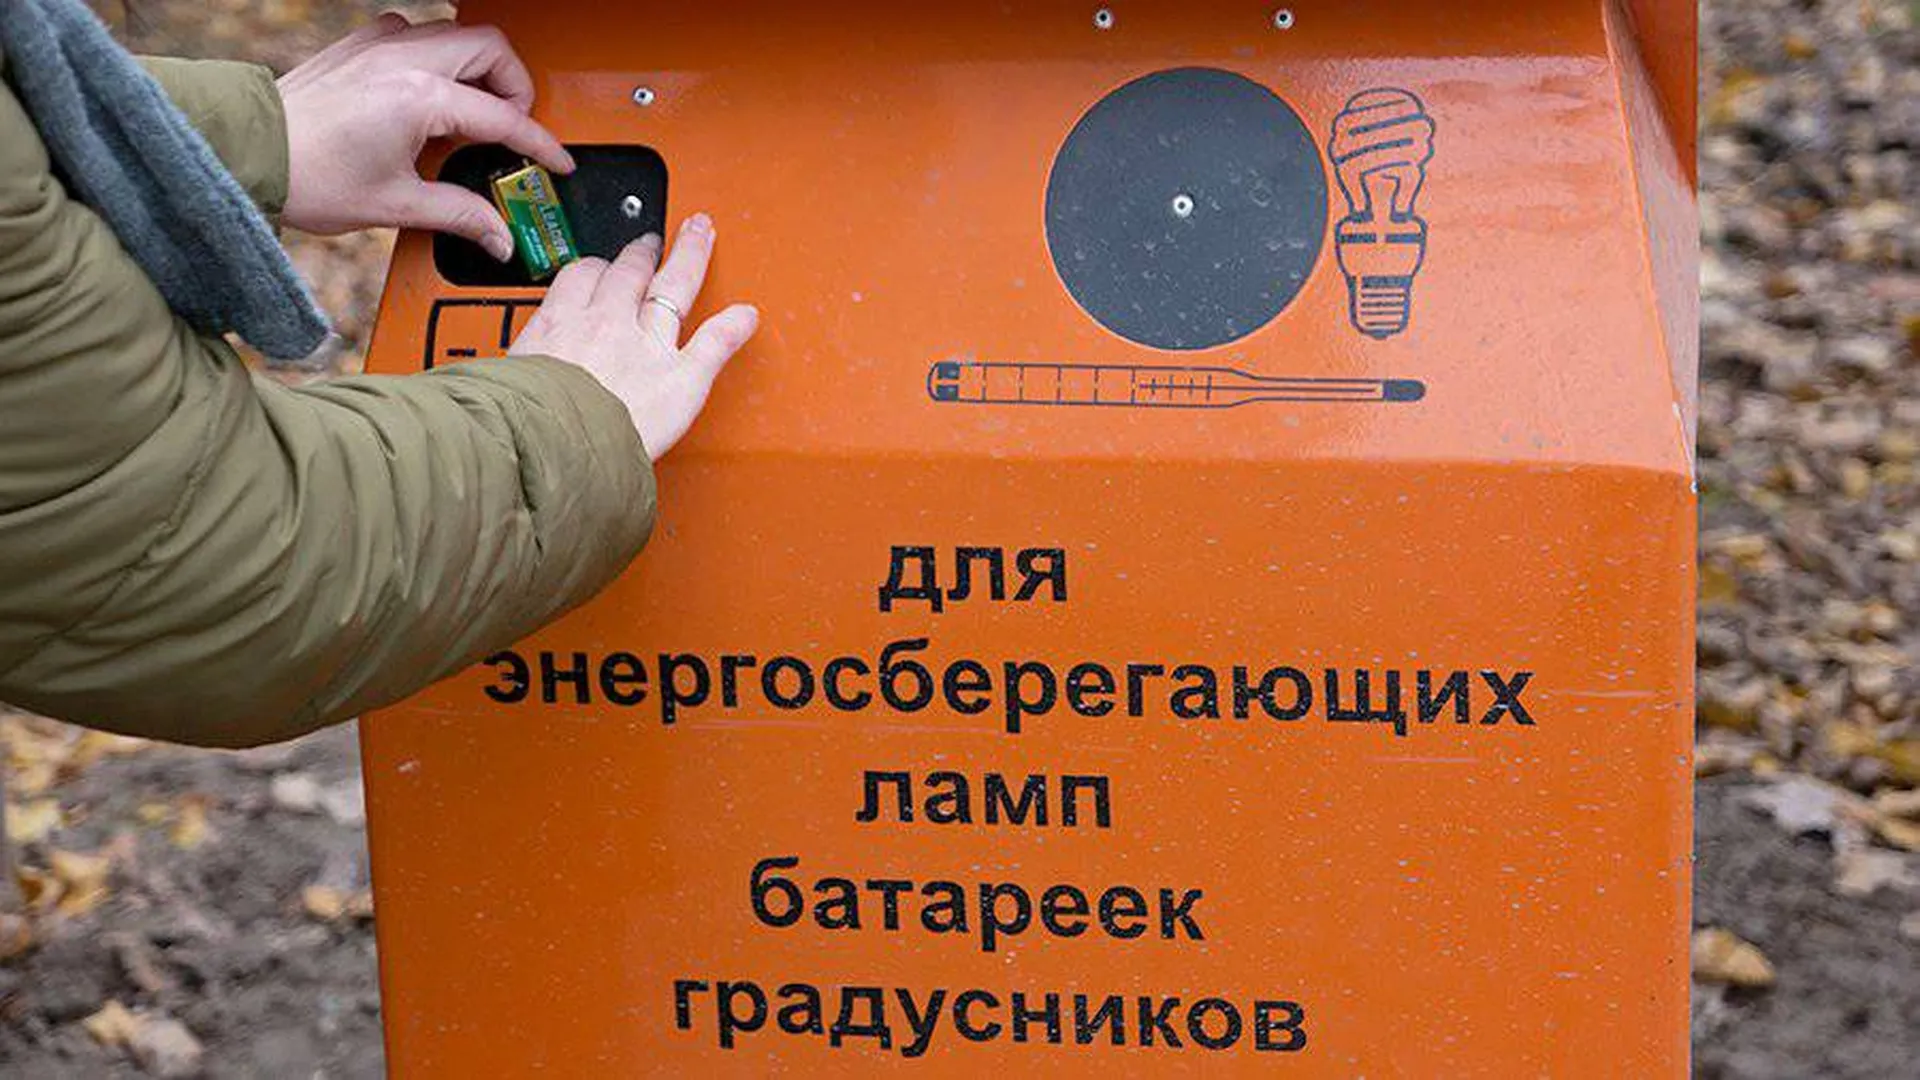 Две трети россиян неправильно выбрасывают батарейки — опрос РЭО